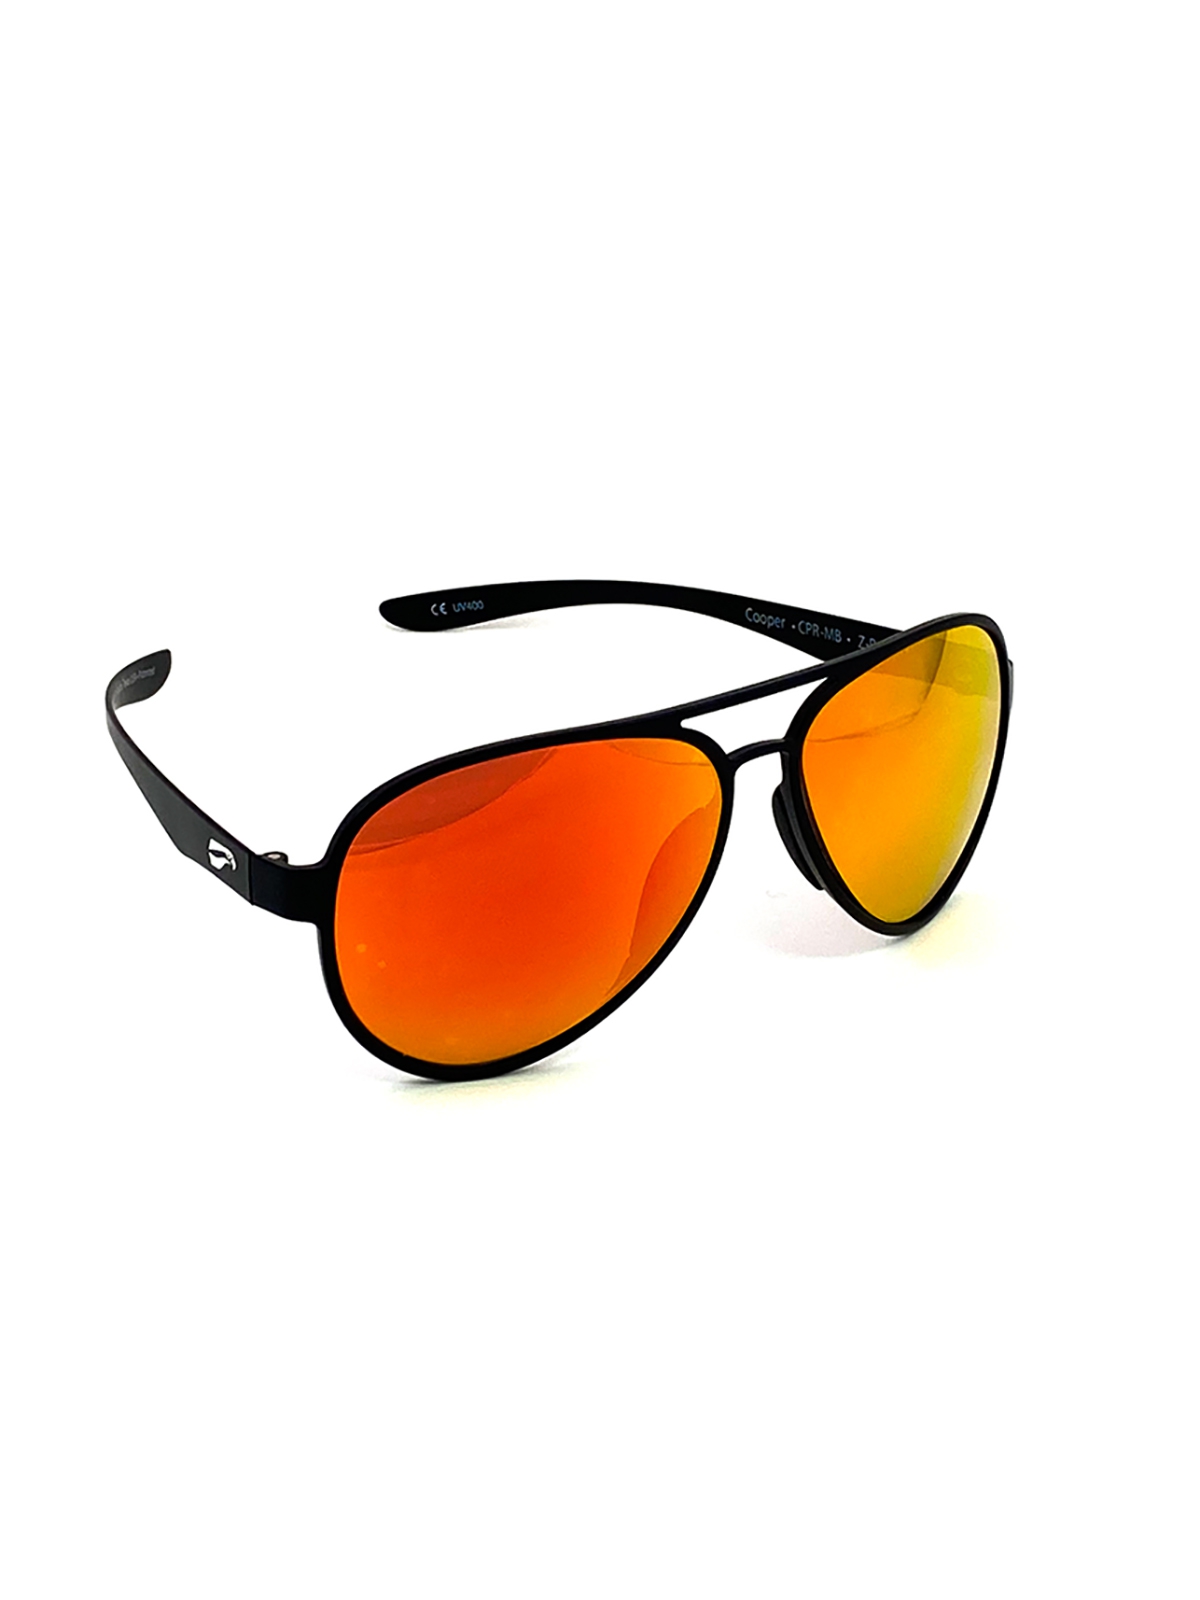 Flying Eyes Sonnenbrille Cooper Aviator - Rahmen matt schwarz, Linsen rosenfarben (verspiegelt)